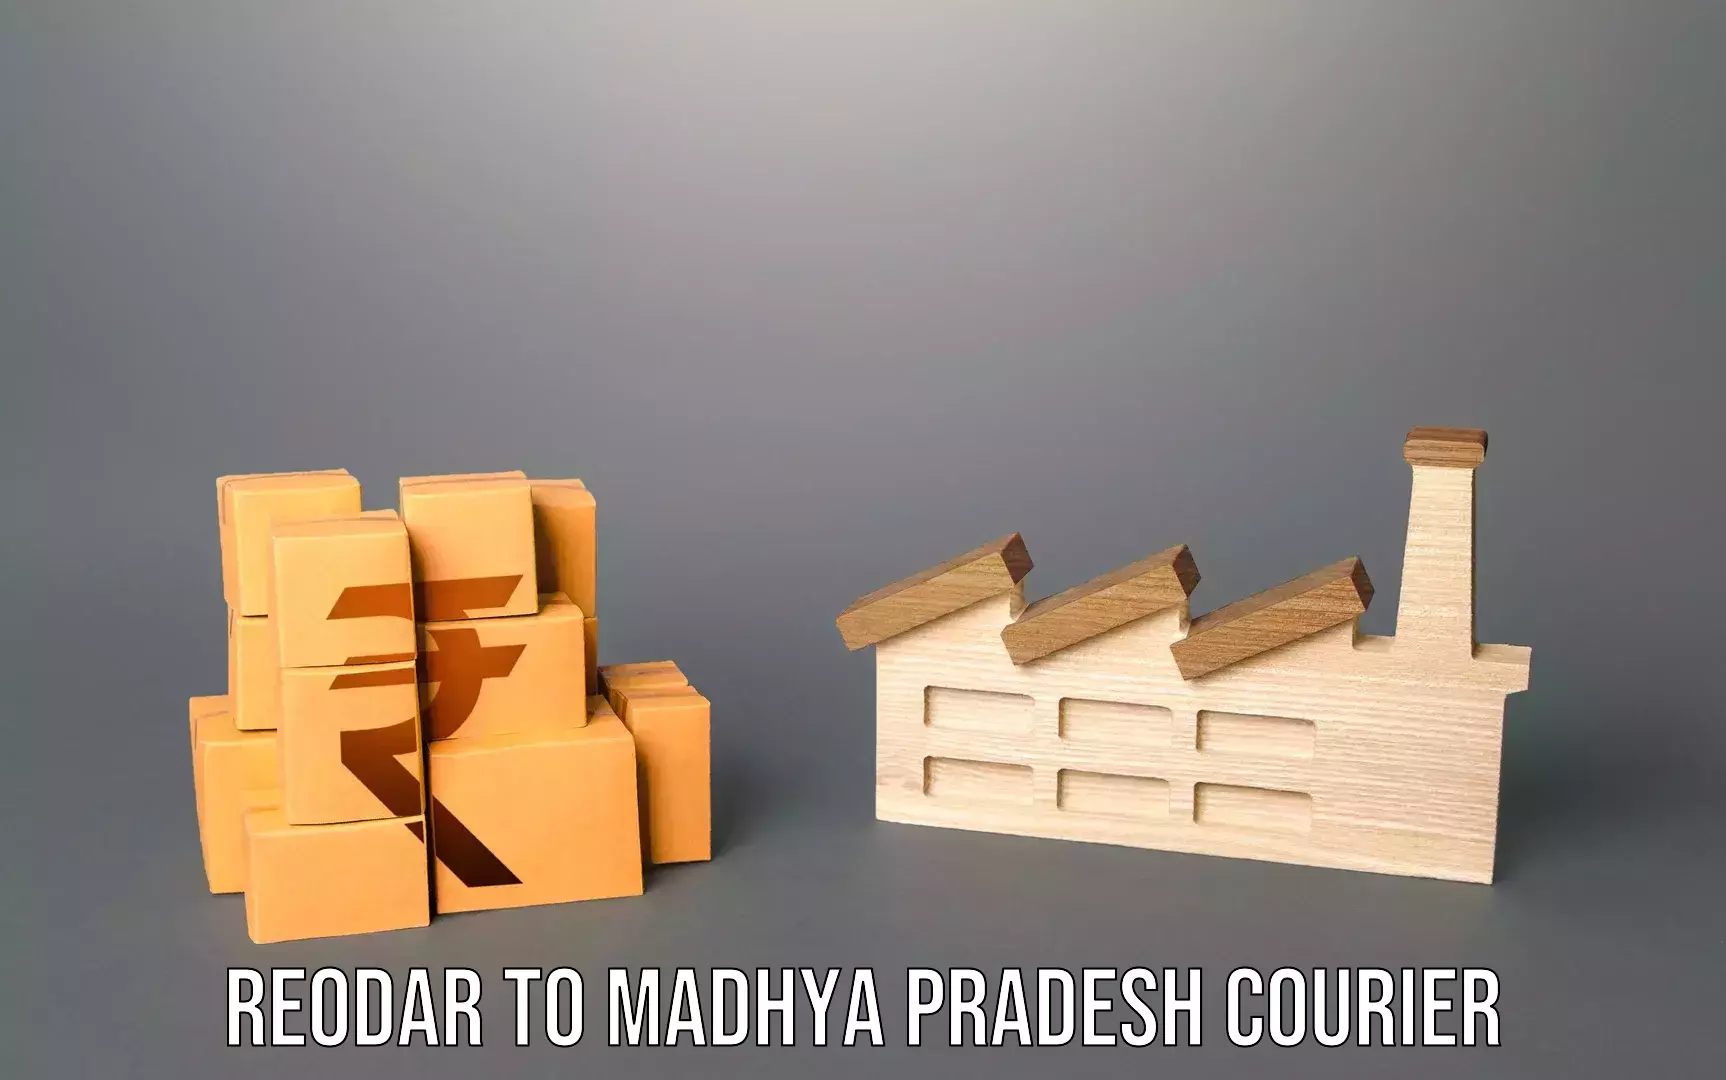 Luggage transfer service Reodar to Madhya Pradesh